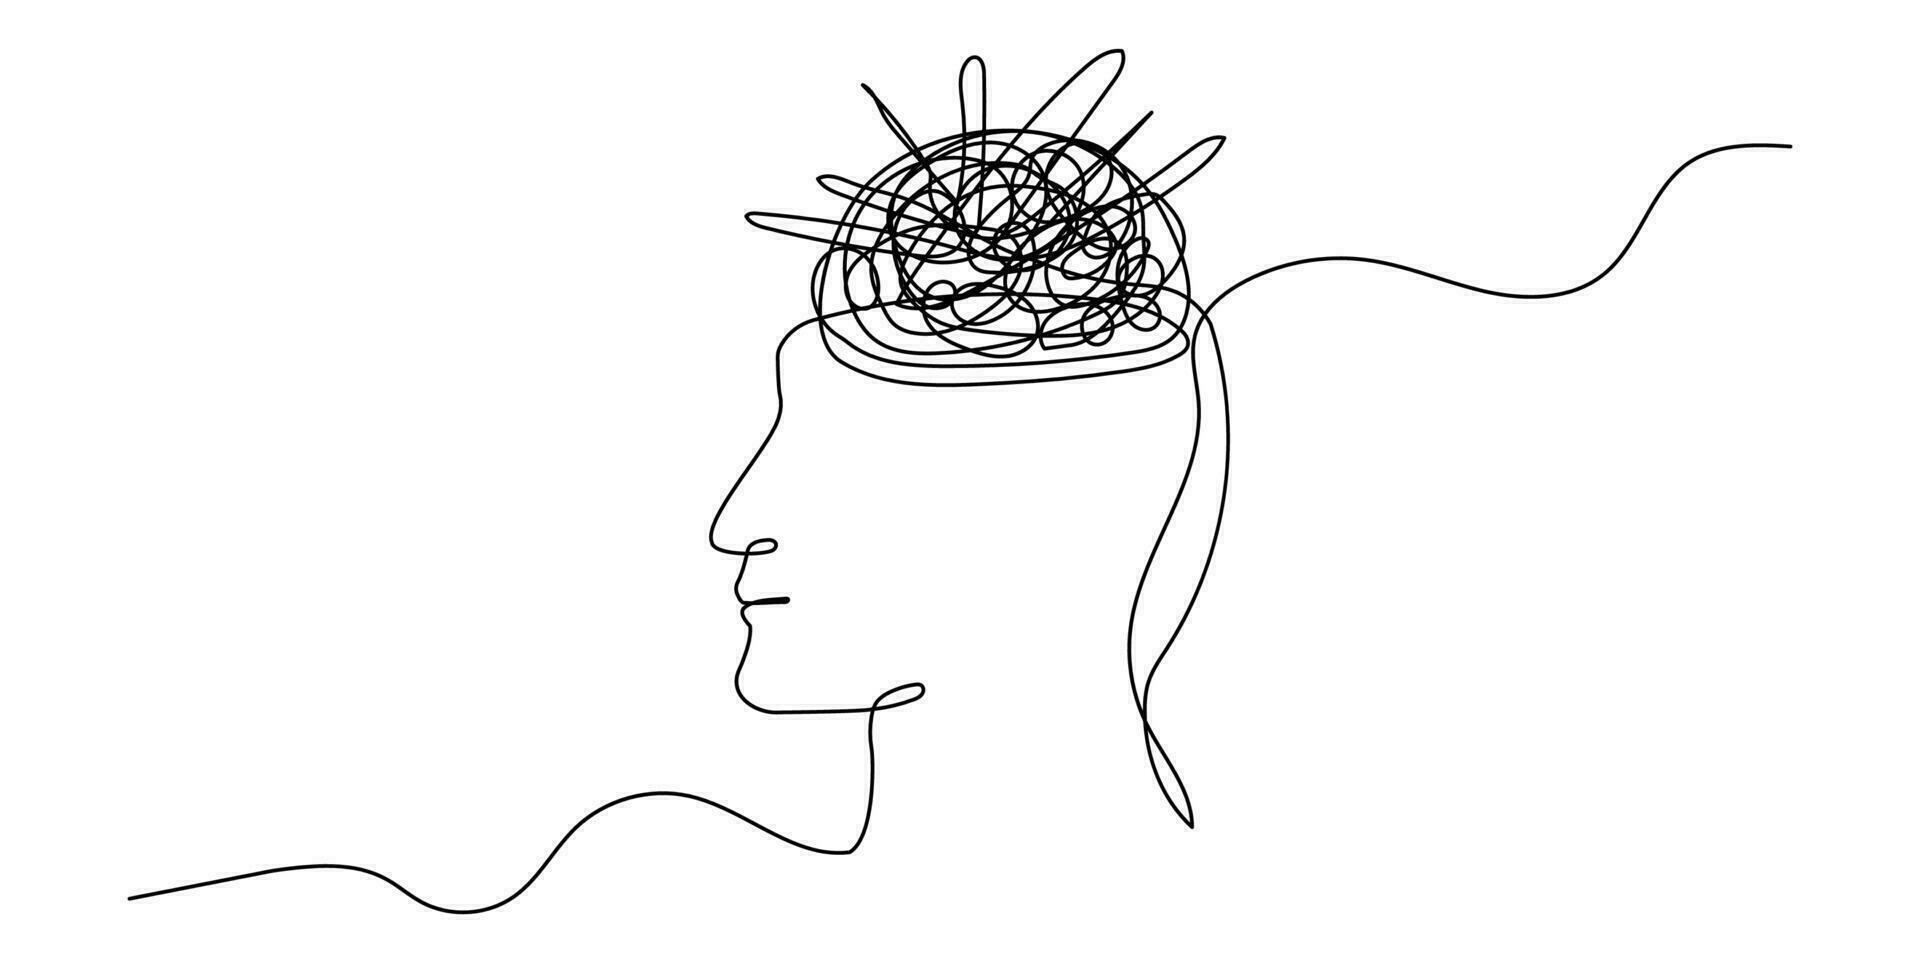 kontinuierlich einer Linie mental Chaos Gehirn Kopf Gesundheit Verstand Kunst skizzieren Gekritzel Konzept. Stress Therapie Problem kontinuierlich einer Linie Zeichnung. ein Single Schlaganfall von Heilung Vektor Zeichnung zum mental Wohlbefinden